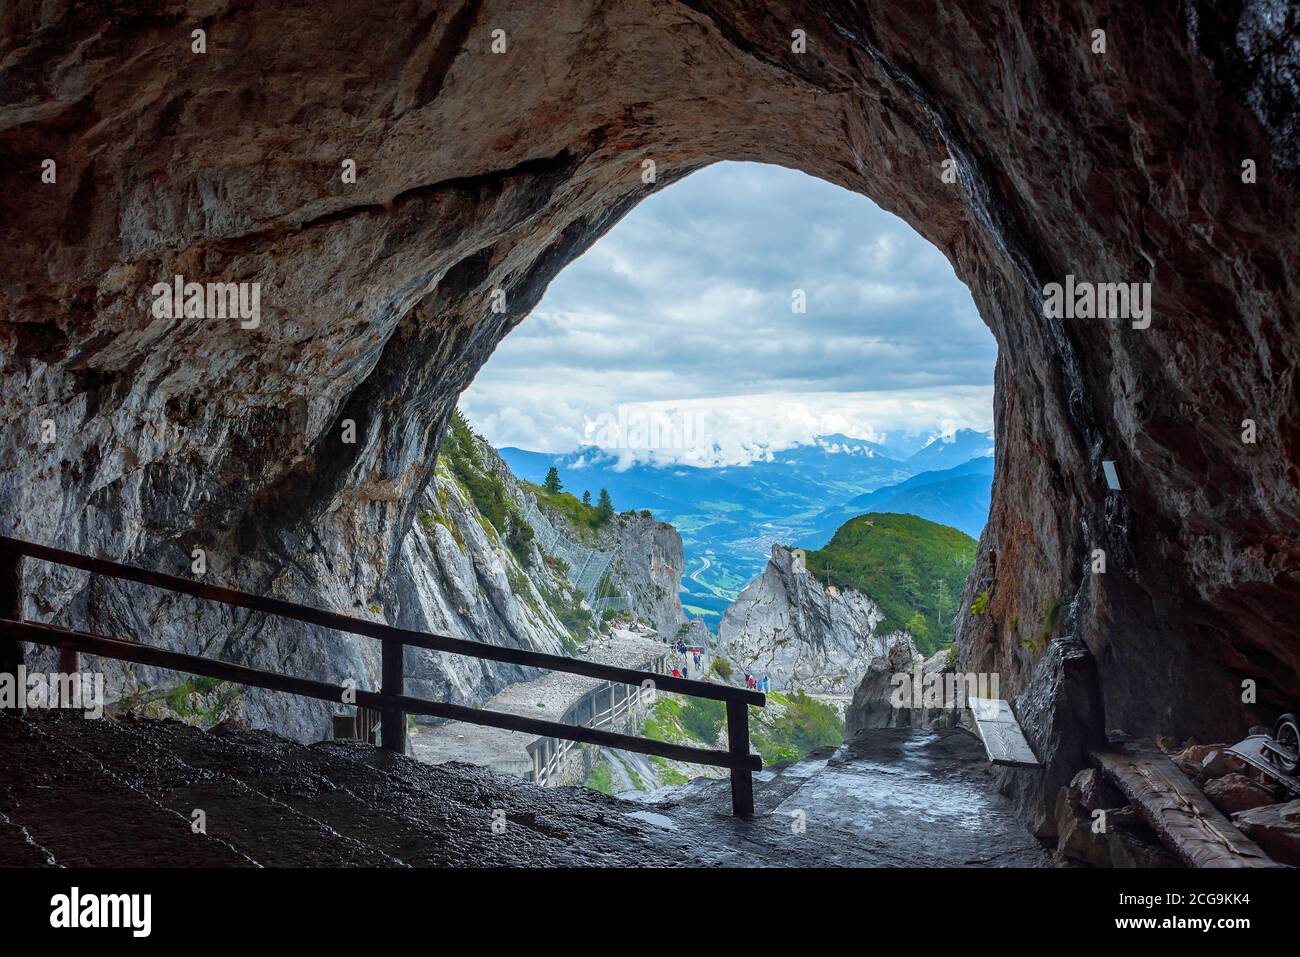 Ingresso della più grande grotta di ghiaccio del mondo. Questo posto è tehre in alta Austria vicino alla città di Werfen. Patrimonio mondiale dell'UNESCO. Splendida vista in centro Foto Stock